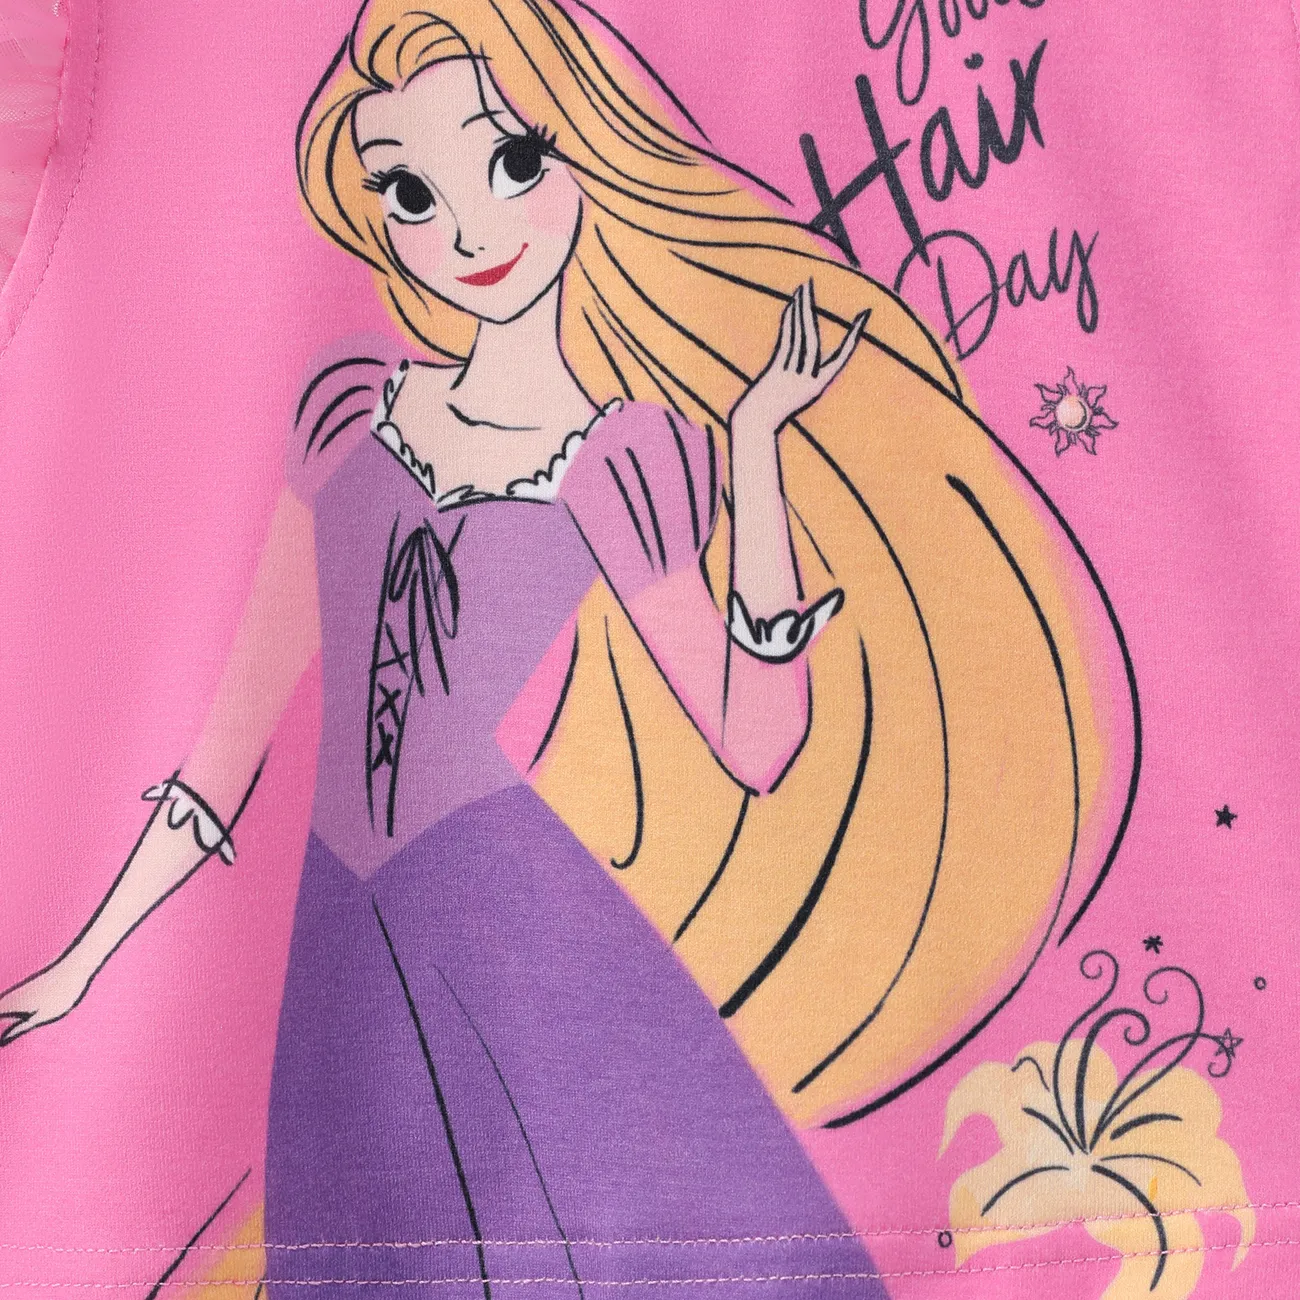 Disney Princess 2 pièces Enfant en bas âge Fille Multi-couches Enfantin ensembles de t-shirts rose big image 1